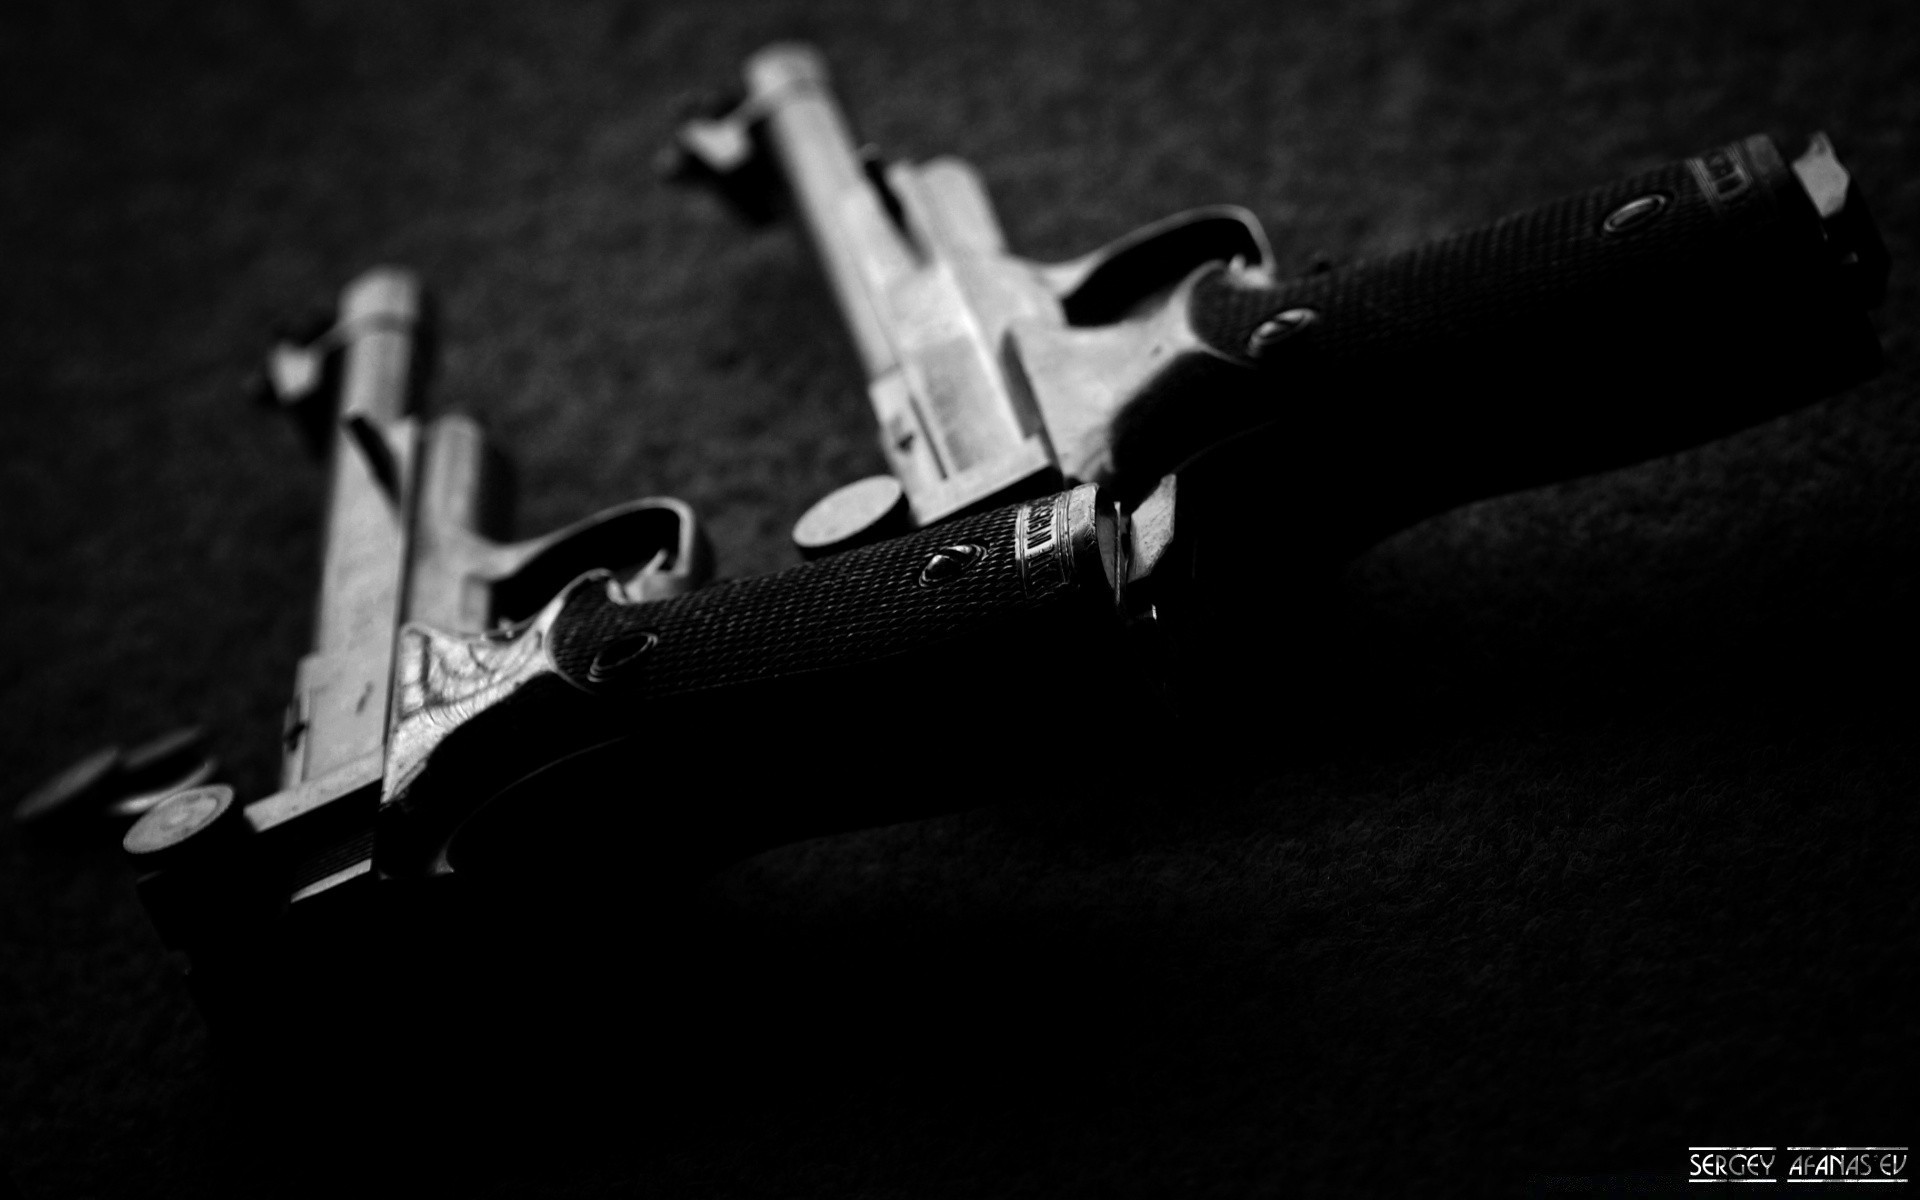 оружие и армия пистолет оружие пистолет преступление силу винтовка войны боеприпасы полиция опасность военные пуля наган триггер дробовик монохромный армия страх датчик